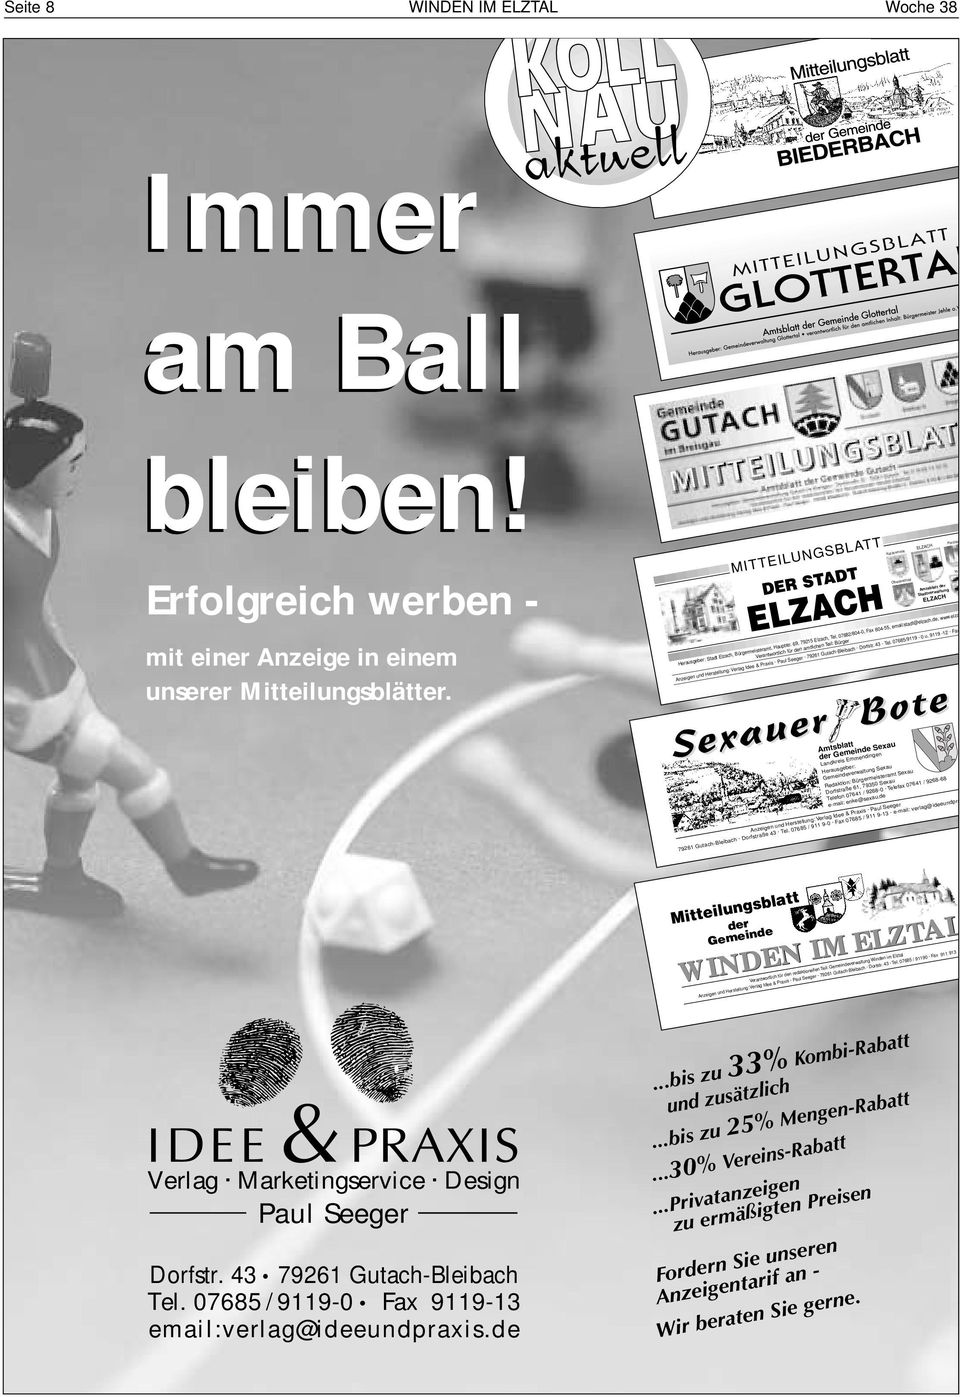 69, 79215 Elzach, Tel. 07682/804-0, Fax 804-55, email:stadt@elzach.de, www.elza Anzeigen und Herstellung: Verlag Idee & Praxis Paul Seeger 79261 Gutach-Bleibach Dorfstr. 43 Tel. 07685/9119-0 u.